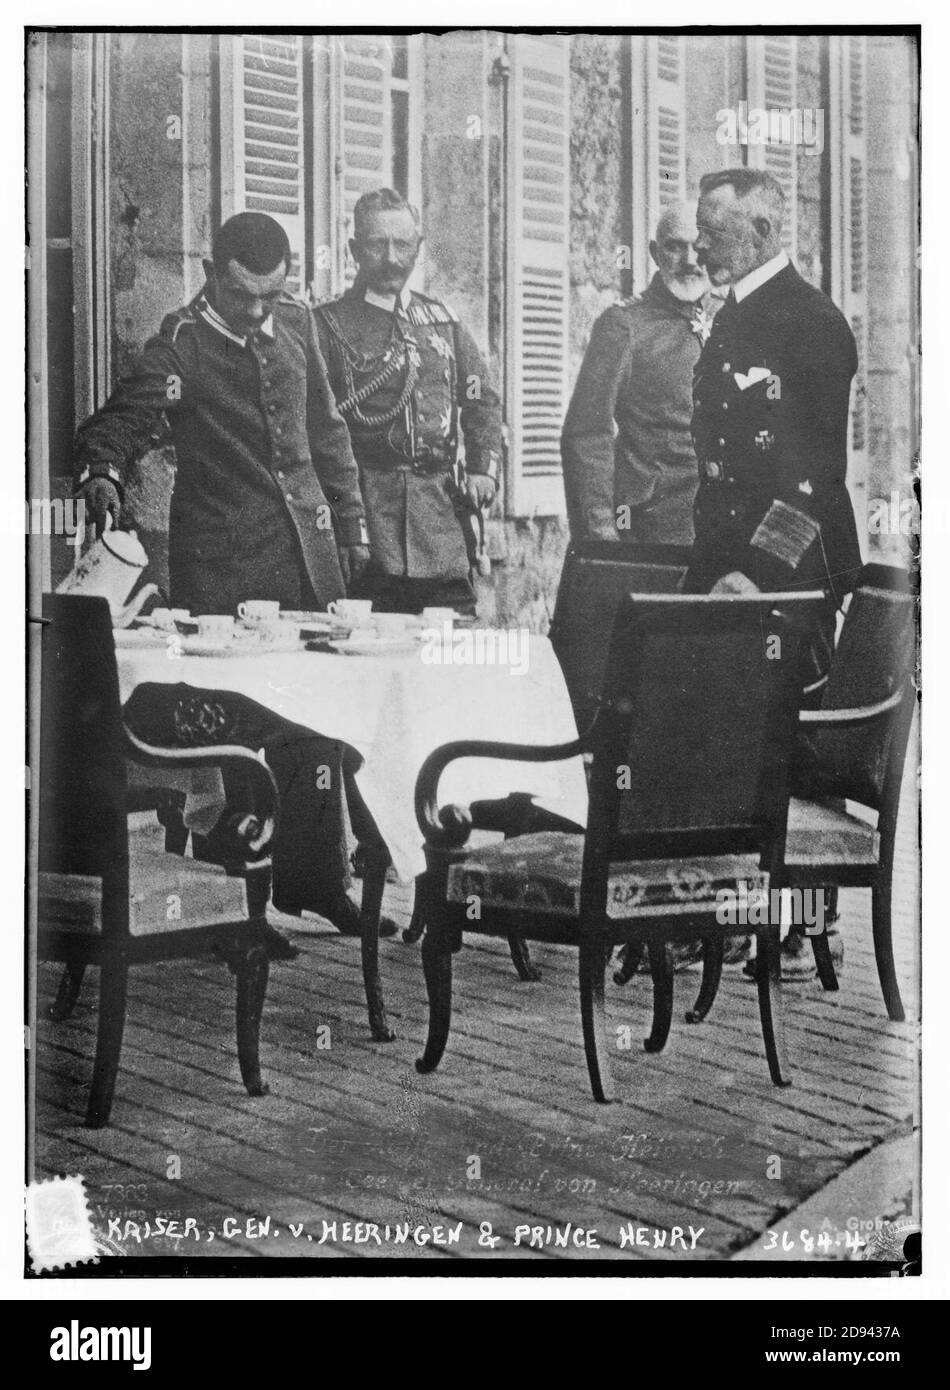 Kaiser, Gen. v. Heeringen & Prince Henry Stock Photo